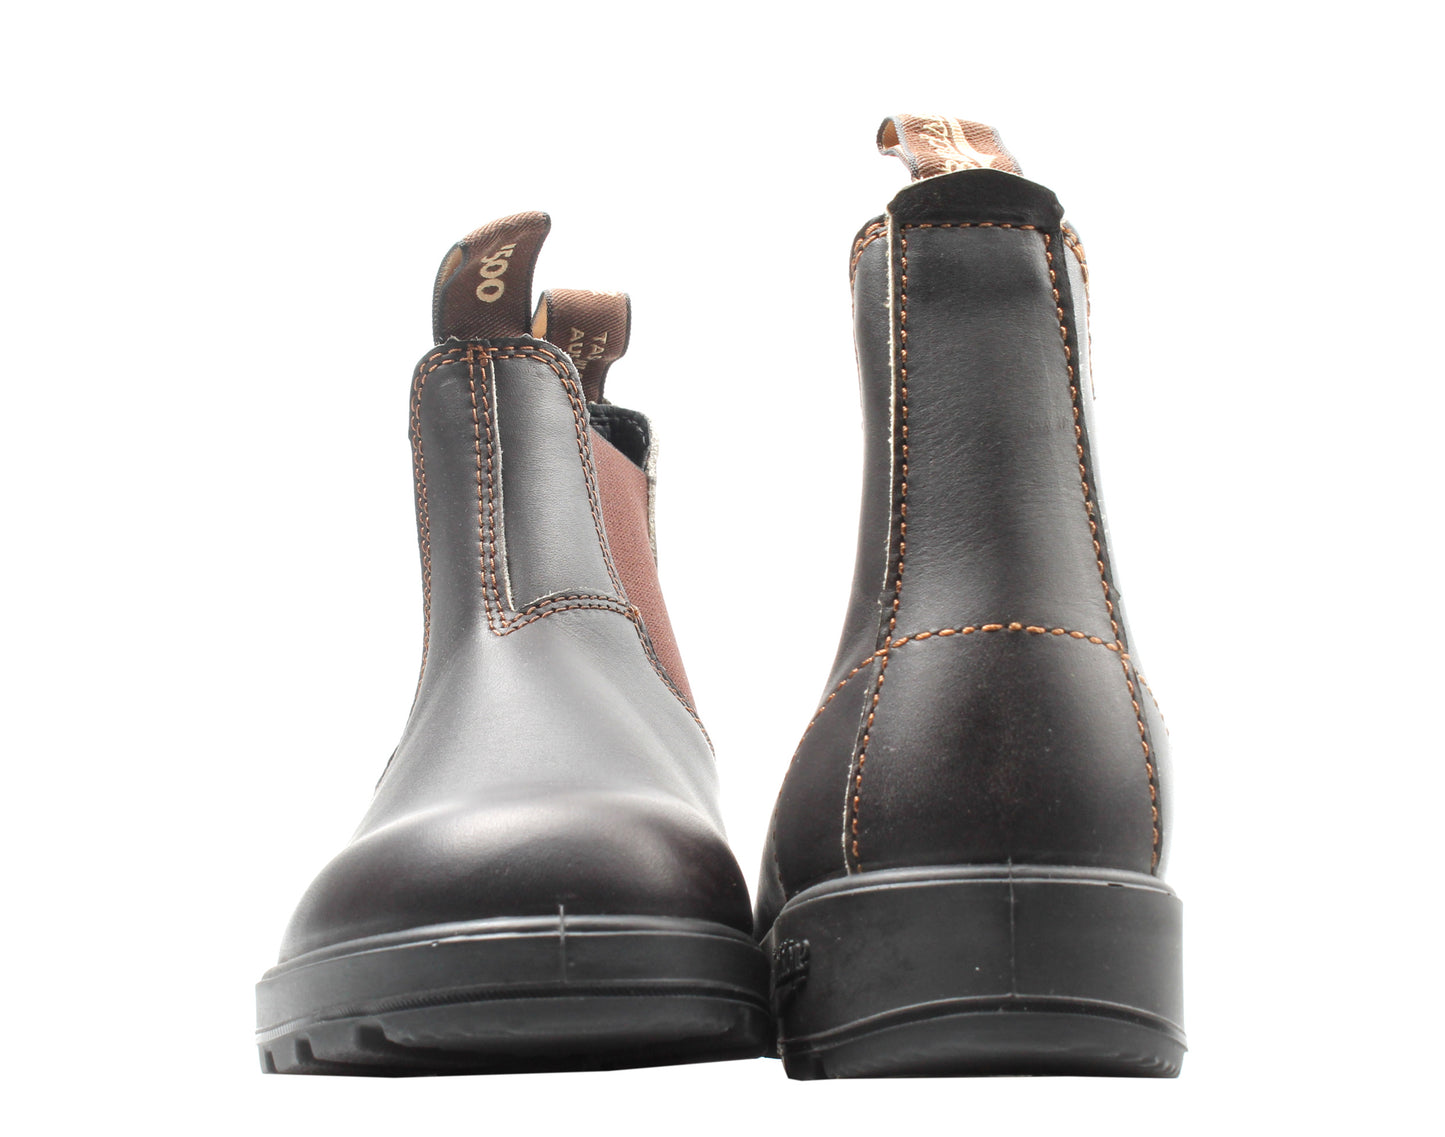 Blundstone 500 Originals Chelsea Boots